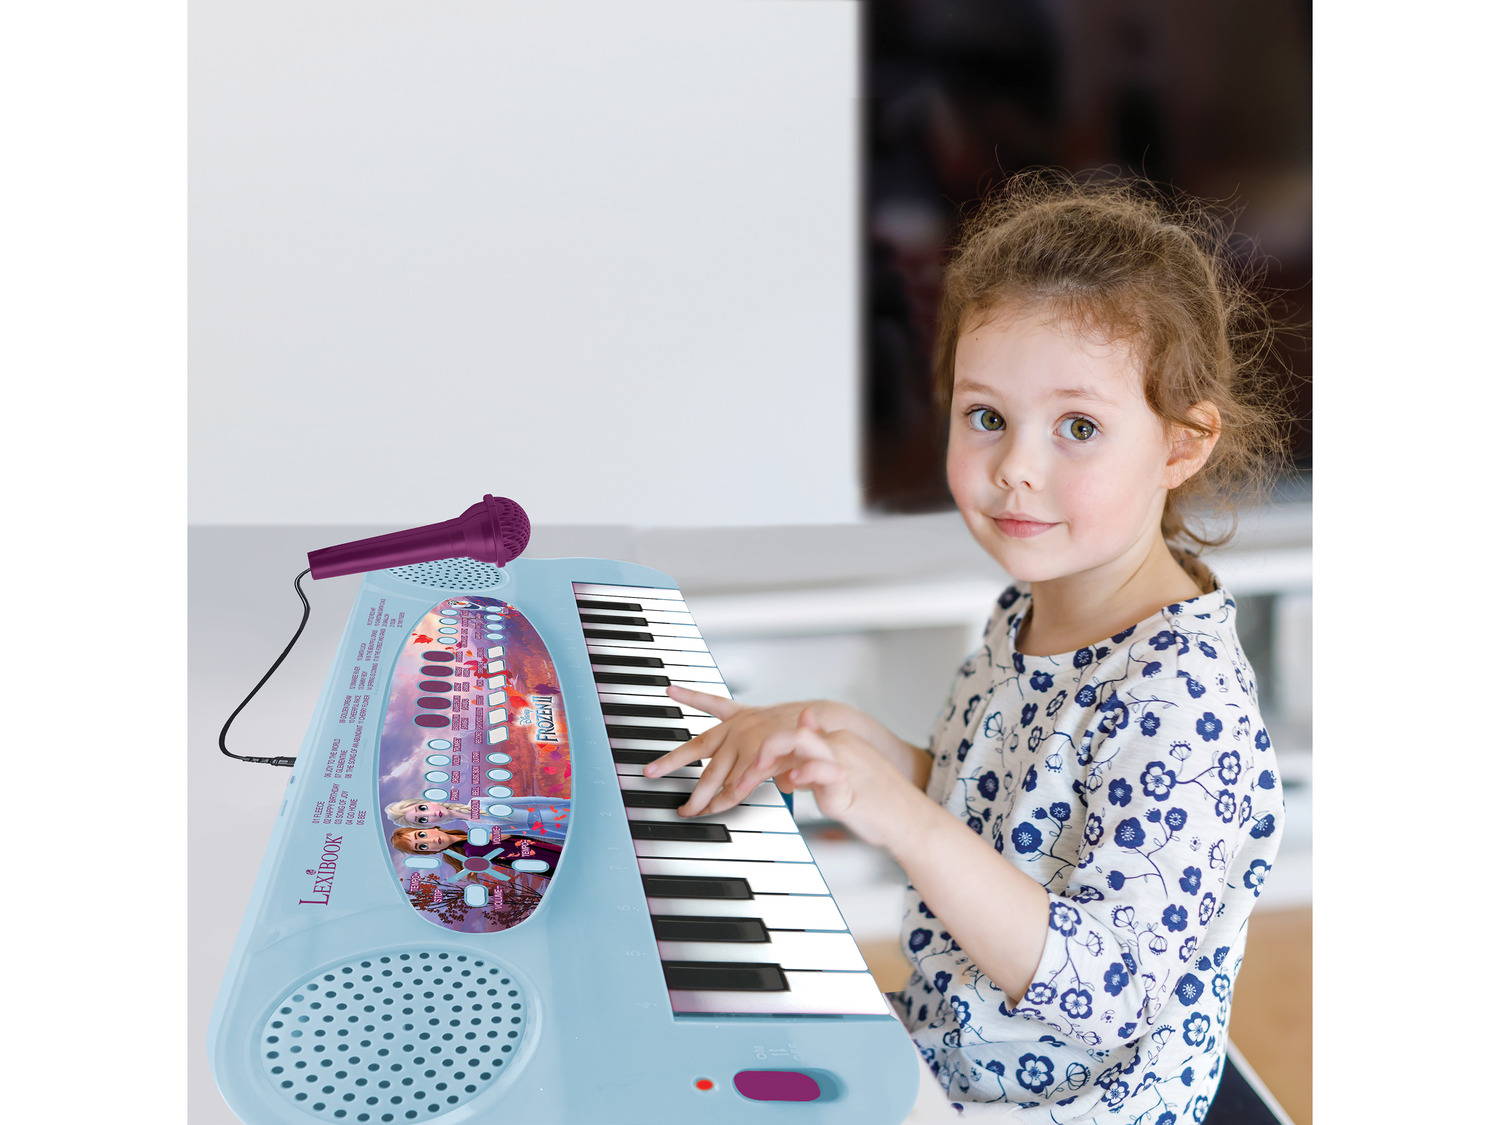 LEXIBOOK Elektronisches Kinder Keyboard »Die Eiskönigi…